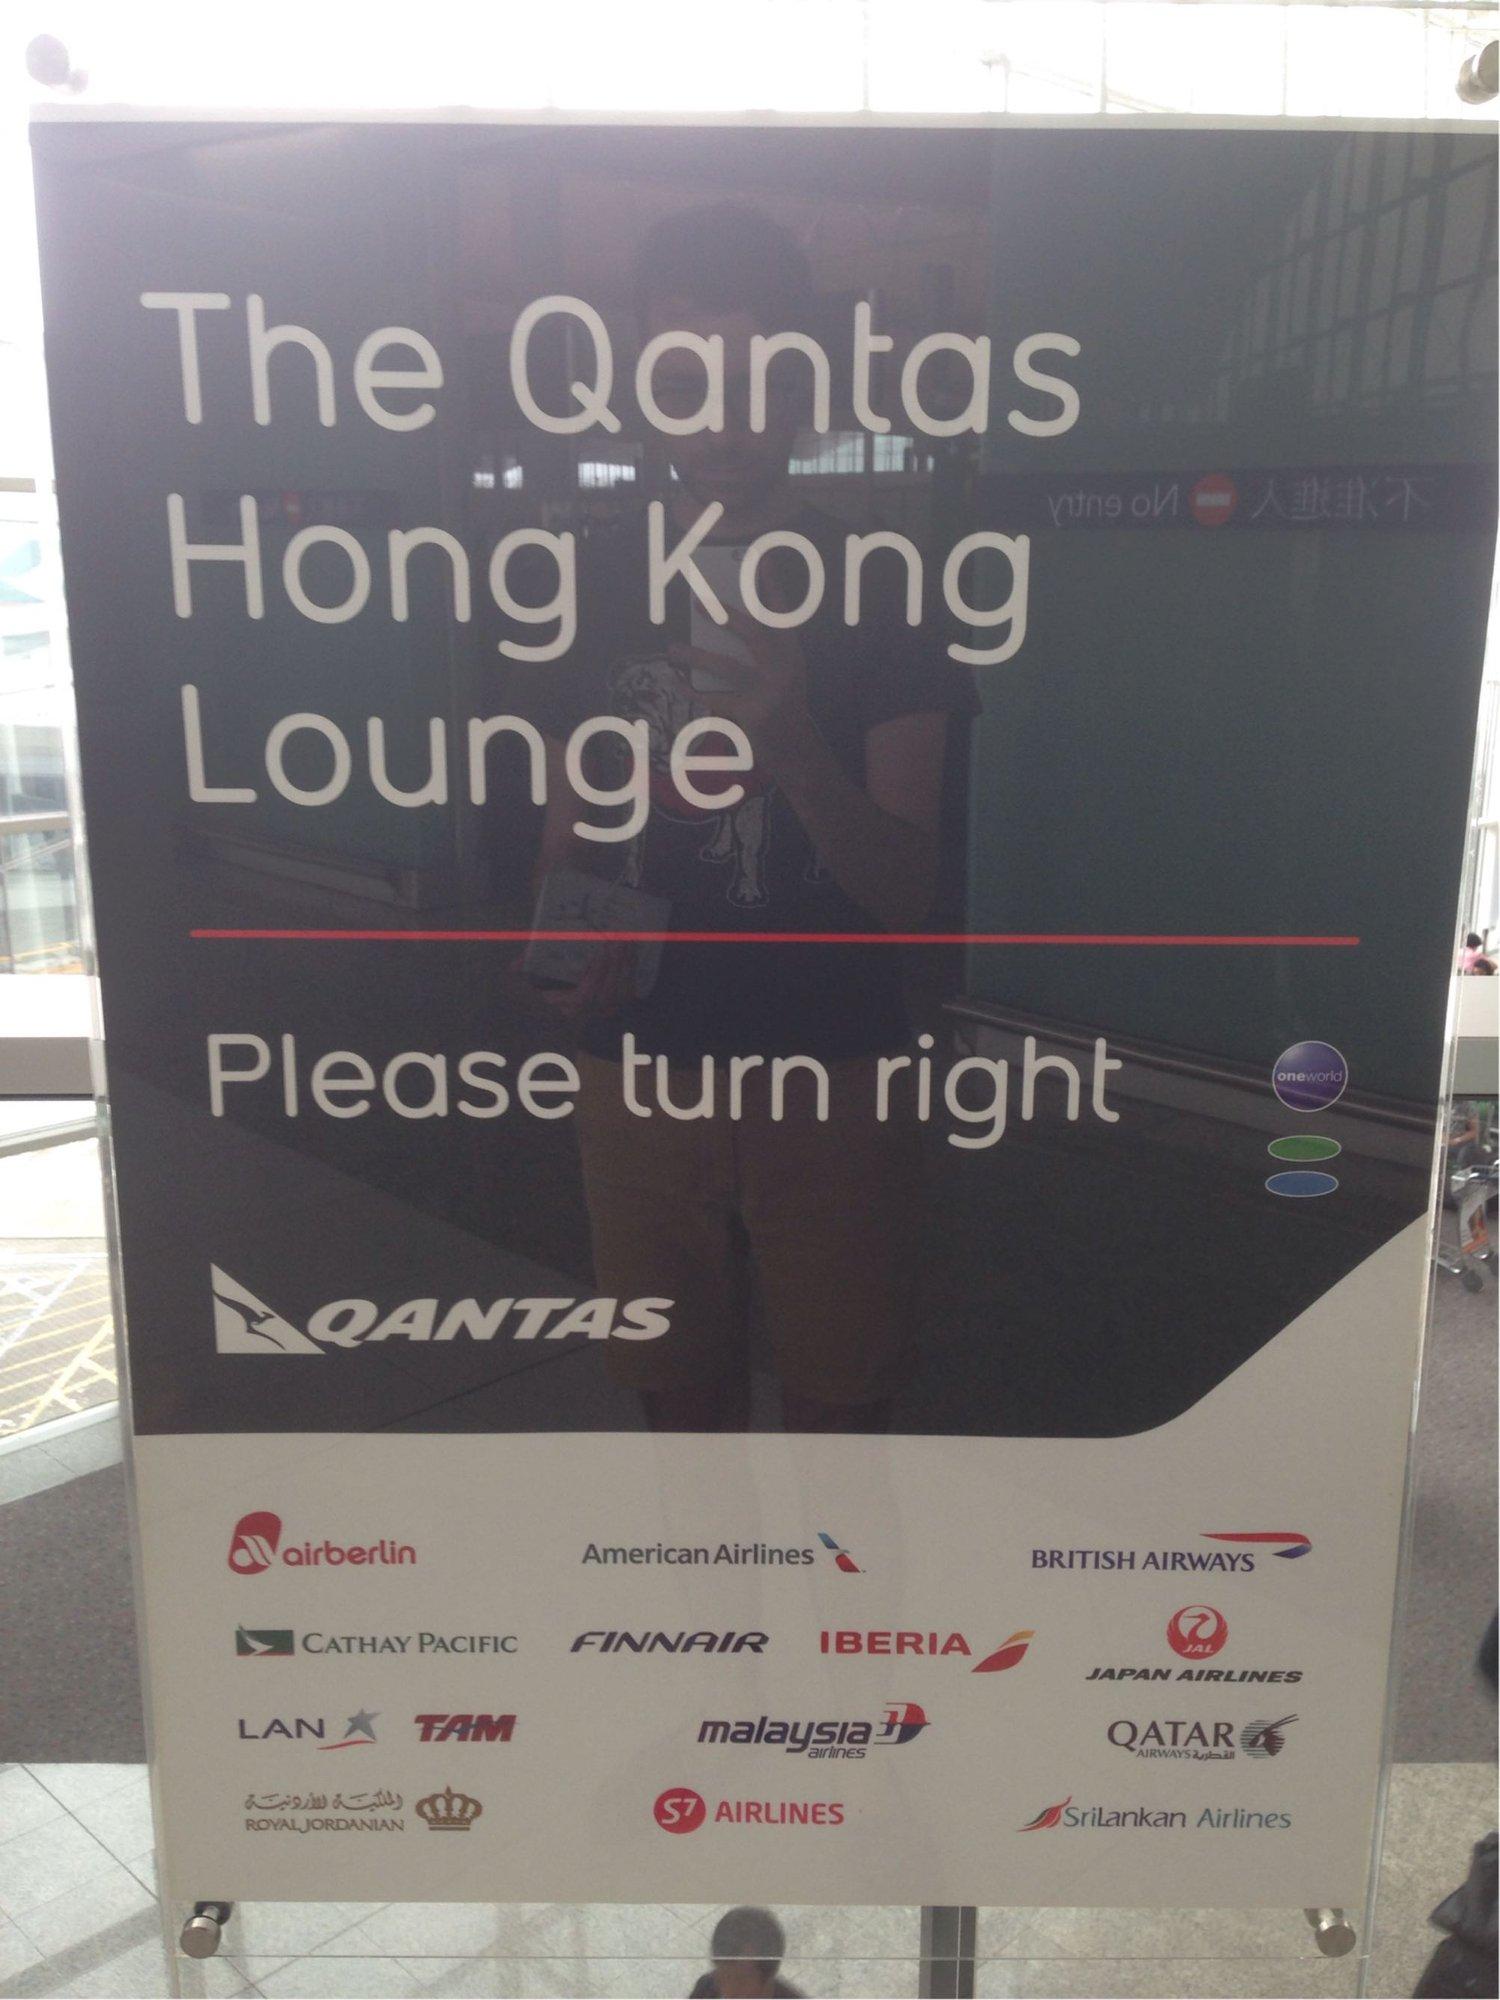 The Qantas Hong Kong Lounge image 54 of 99